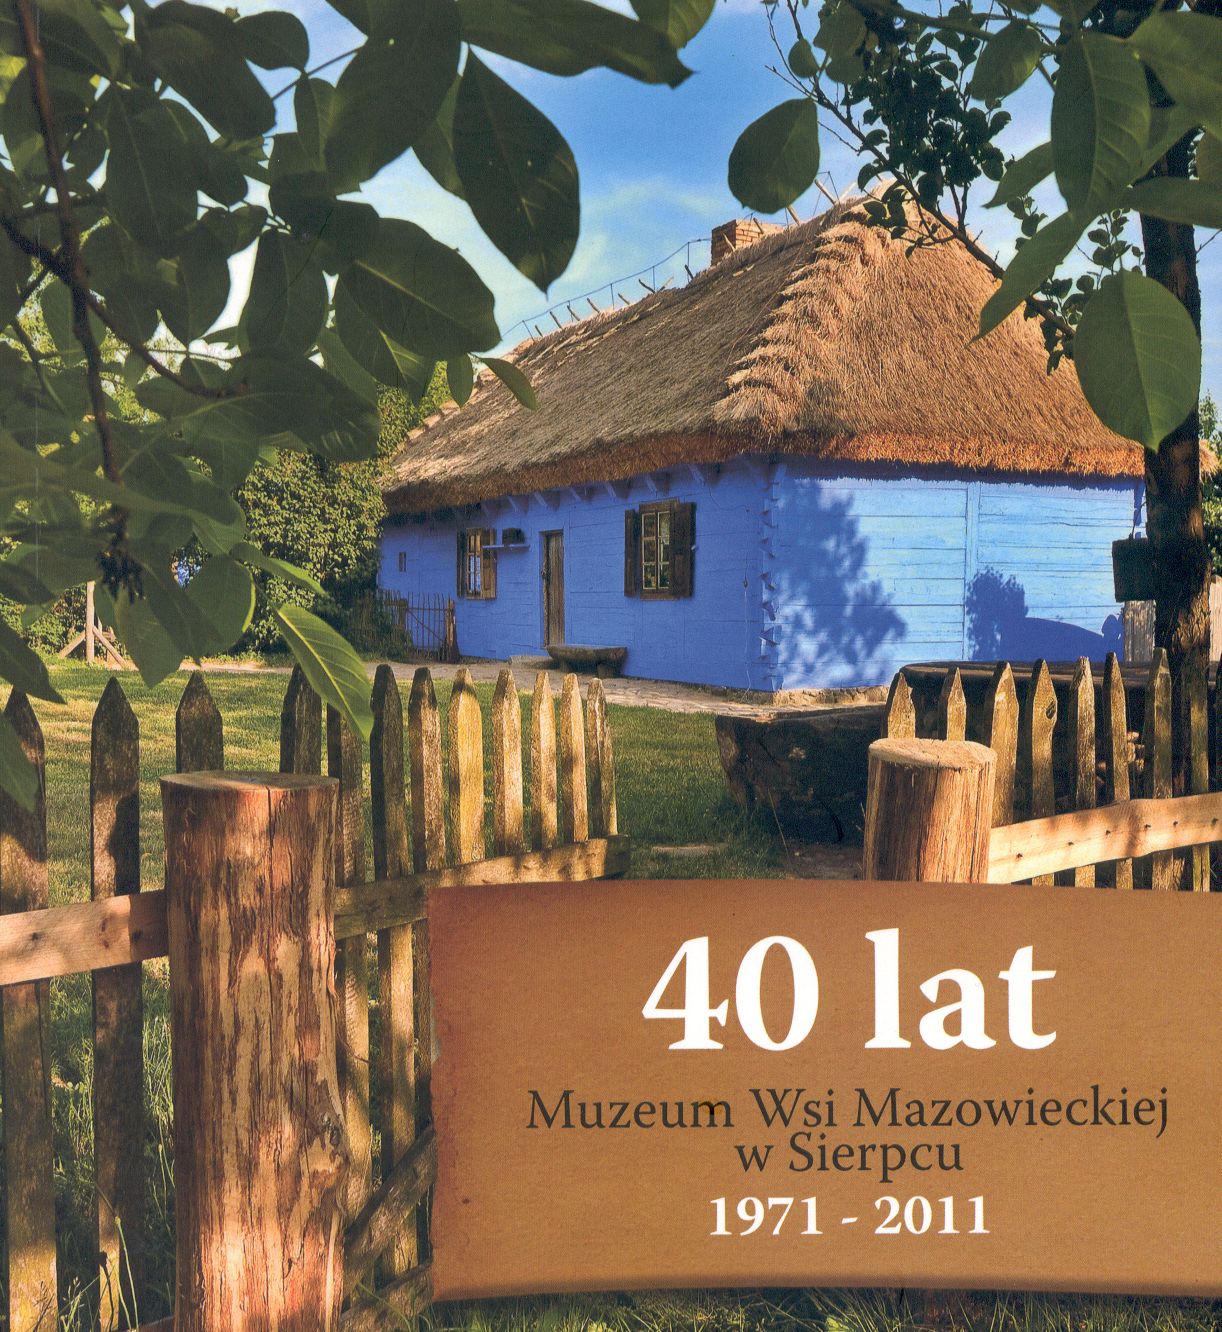 40 lat Muzeum Wsi Mazowieckiej w Sierpcu 1971-2011